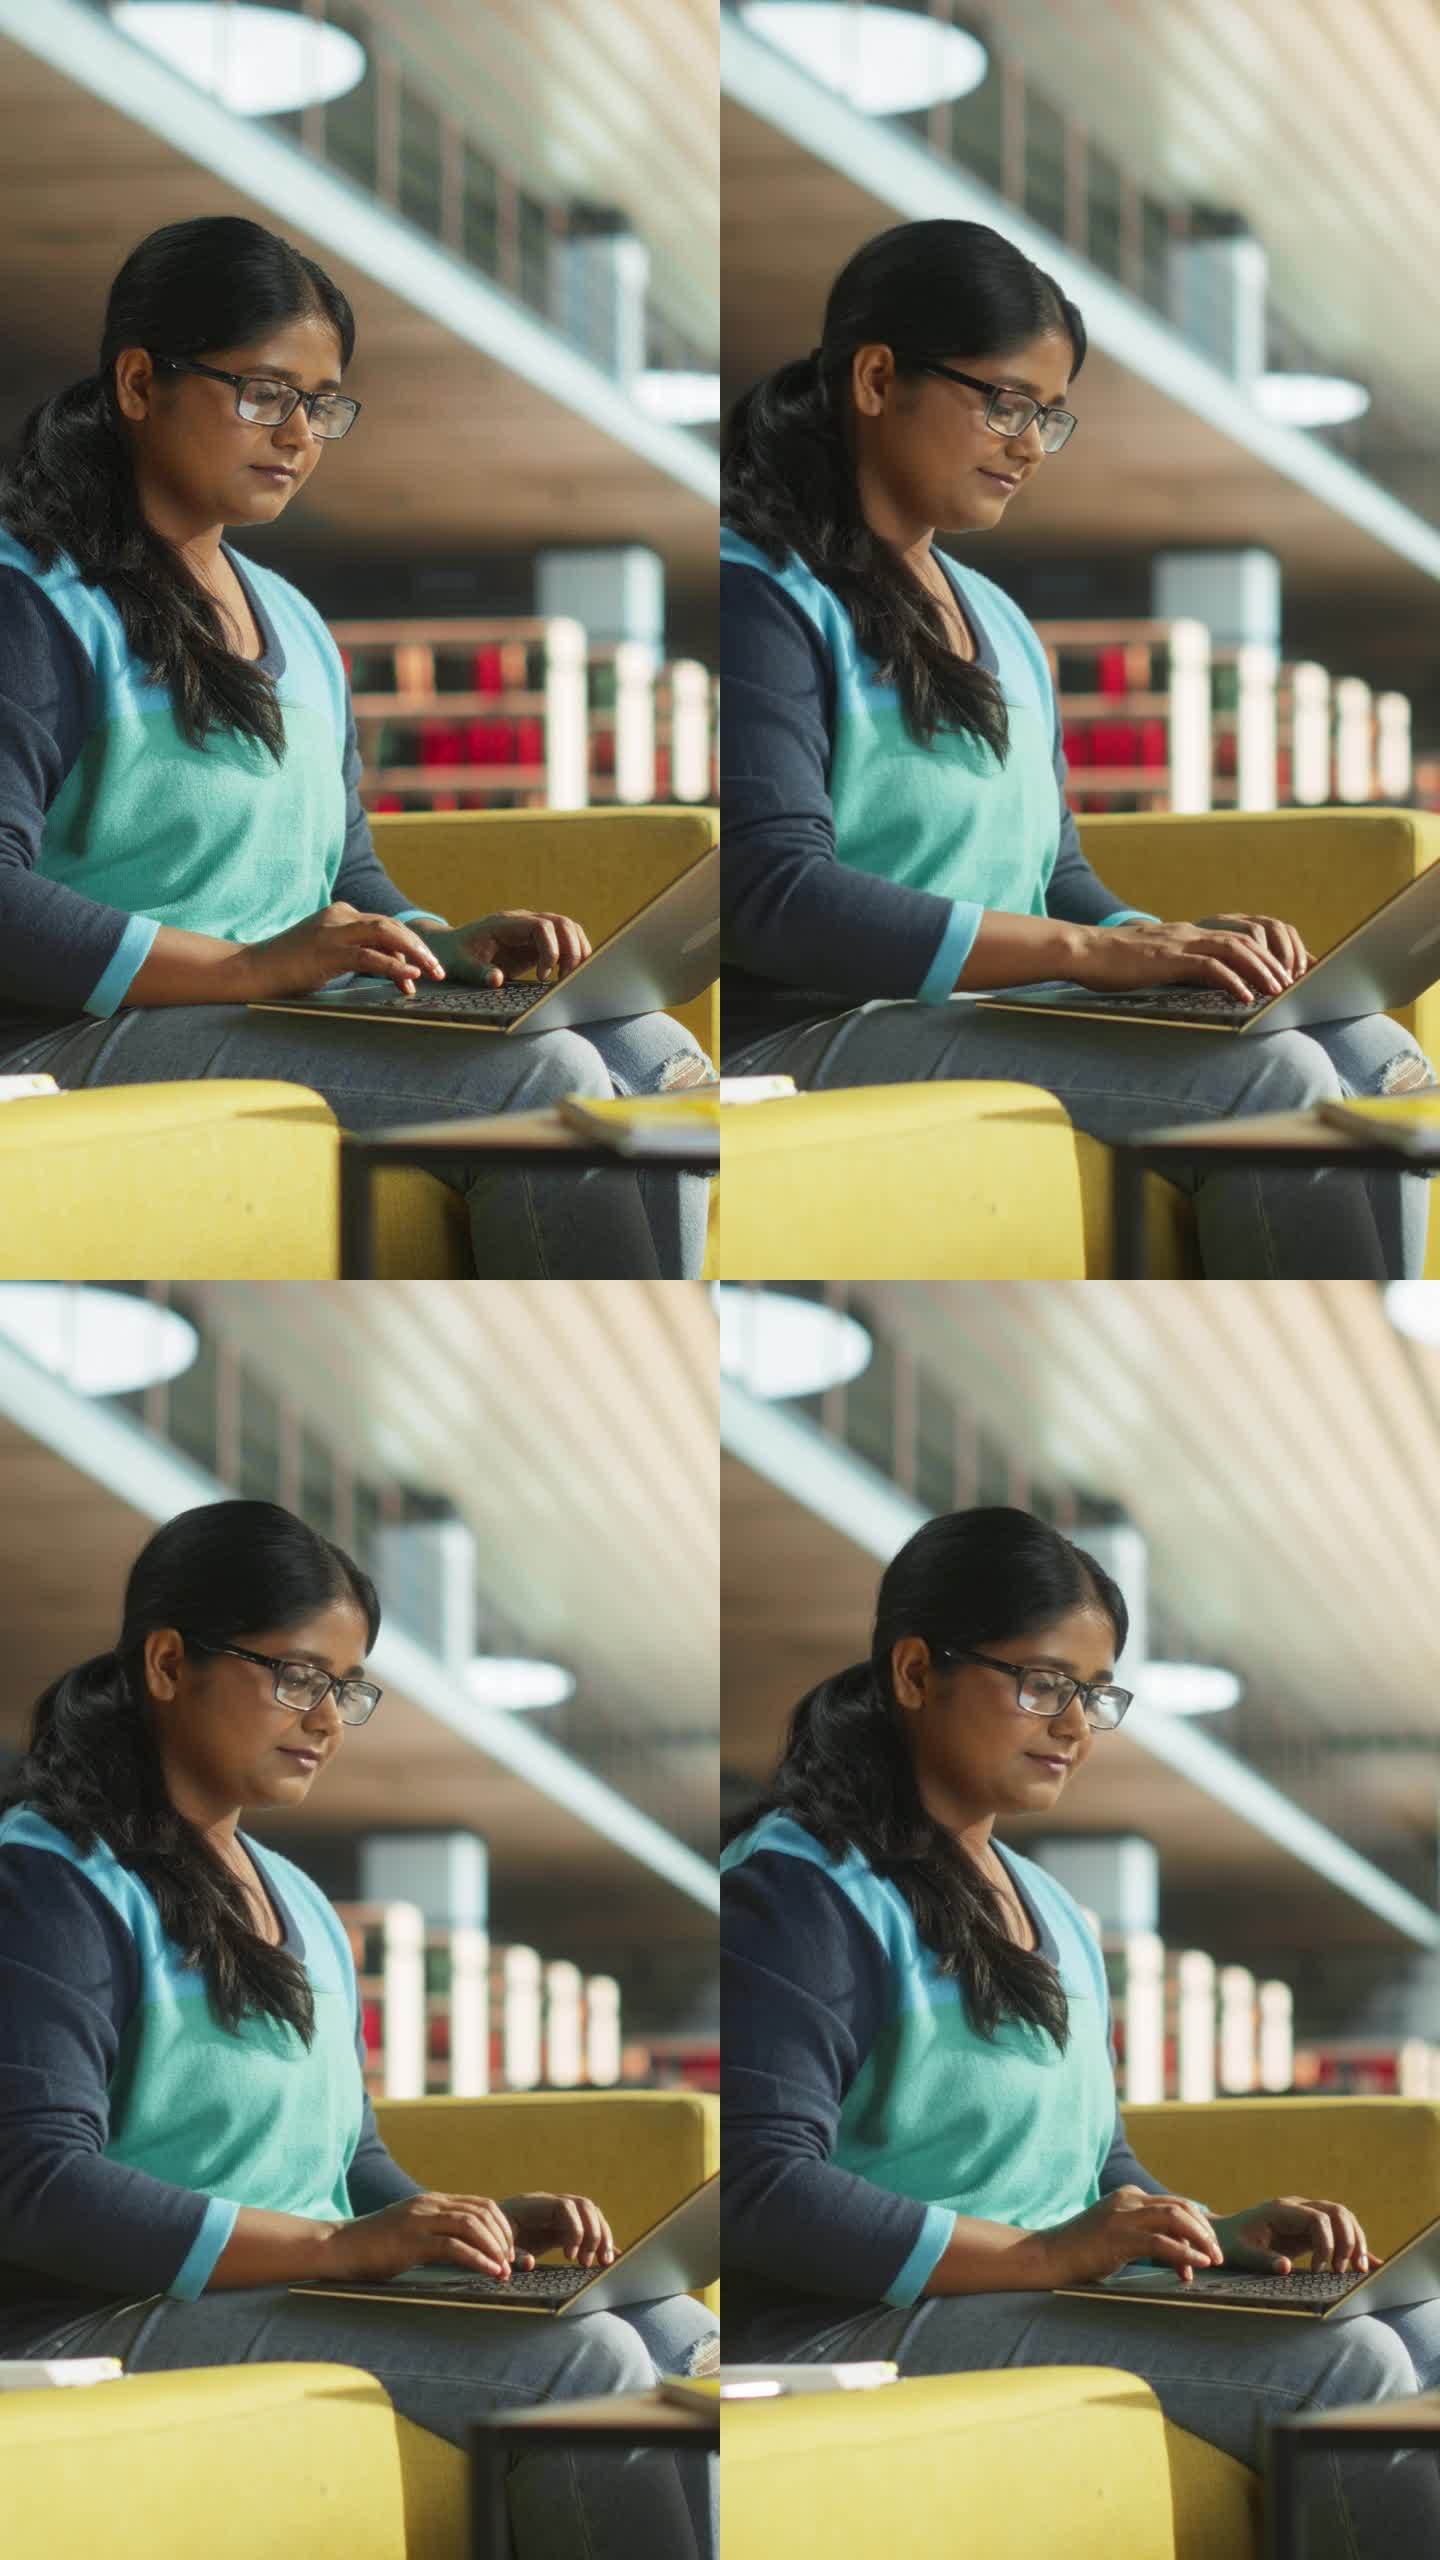 垂直屏幕:印度女性在公共图书馆使用笔记本电脑完成大学项目的课堂作业。年轻的南亚妇女在做练习的同时在线